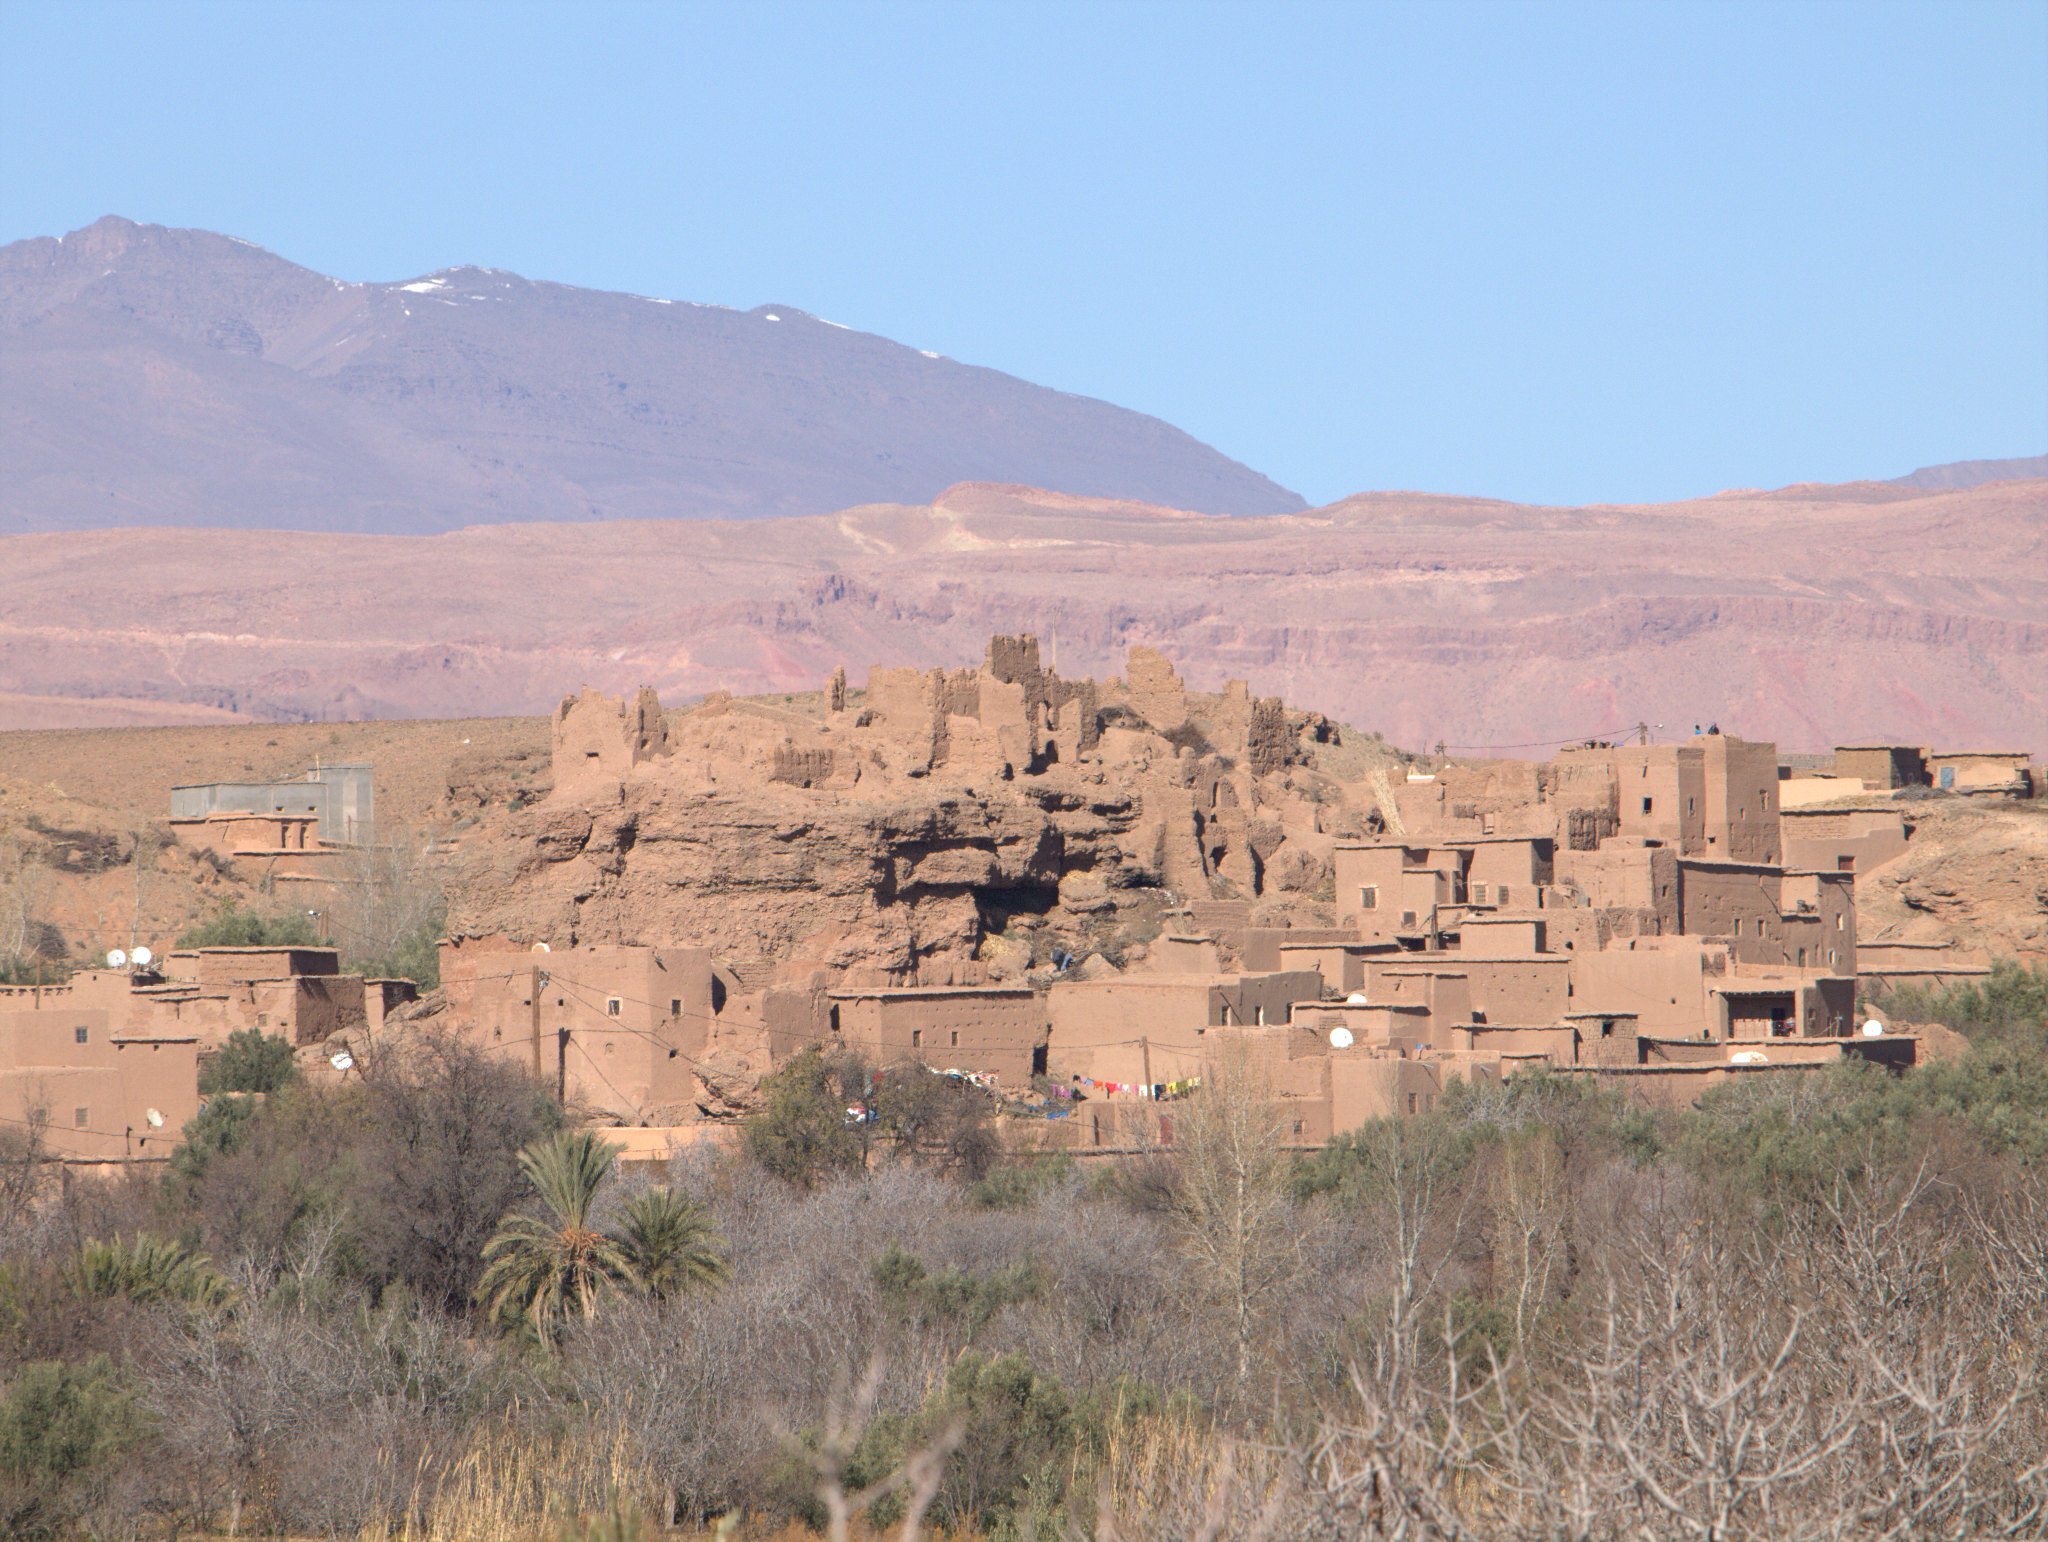 Viaggio Marocco - Essenza marocchina